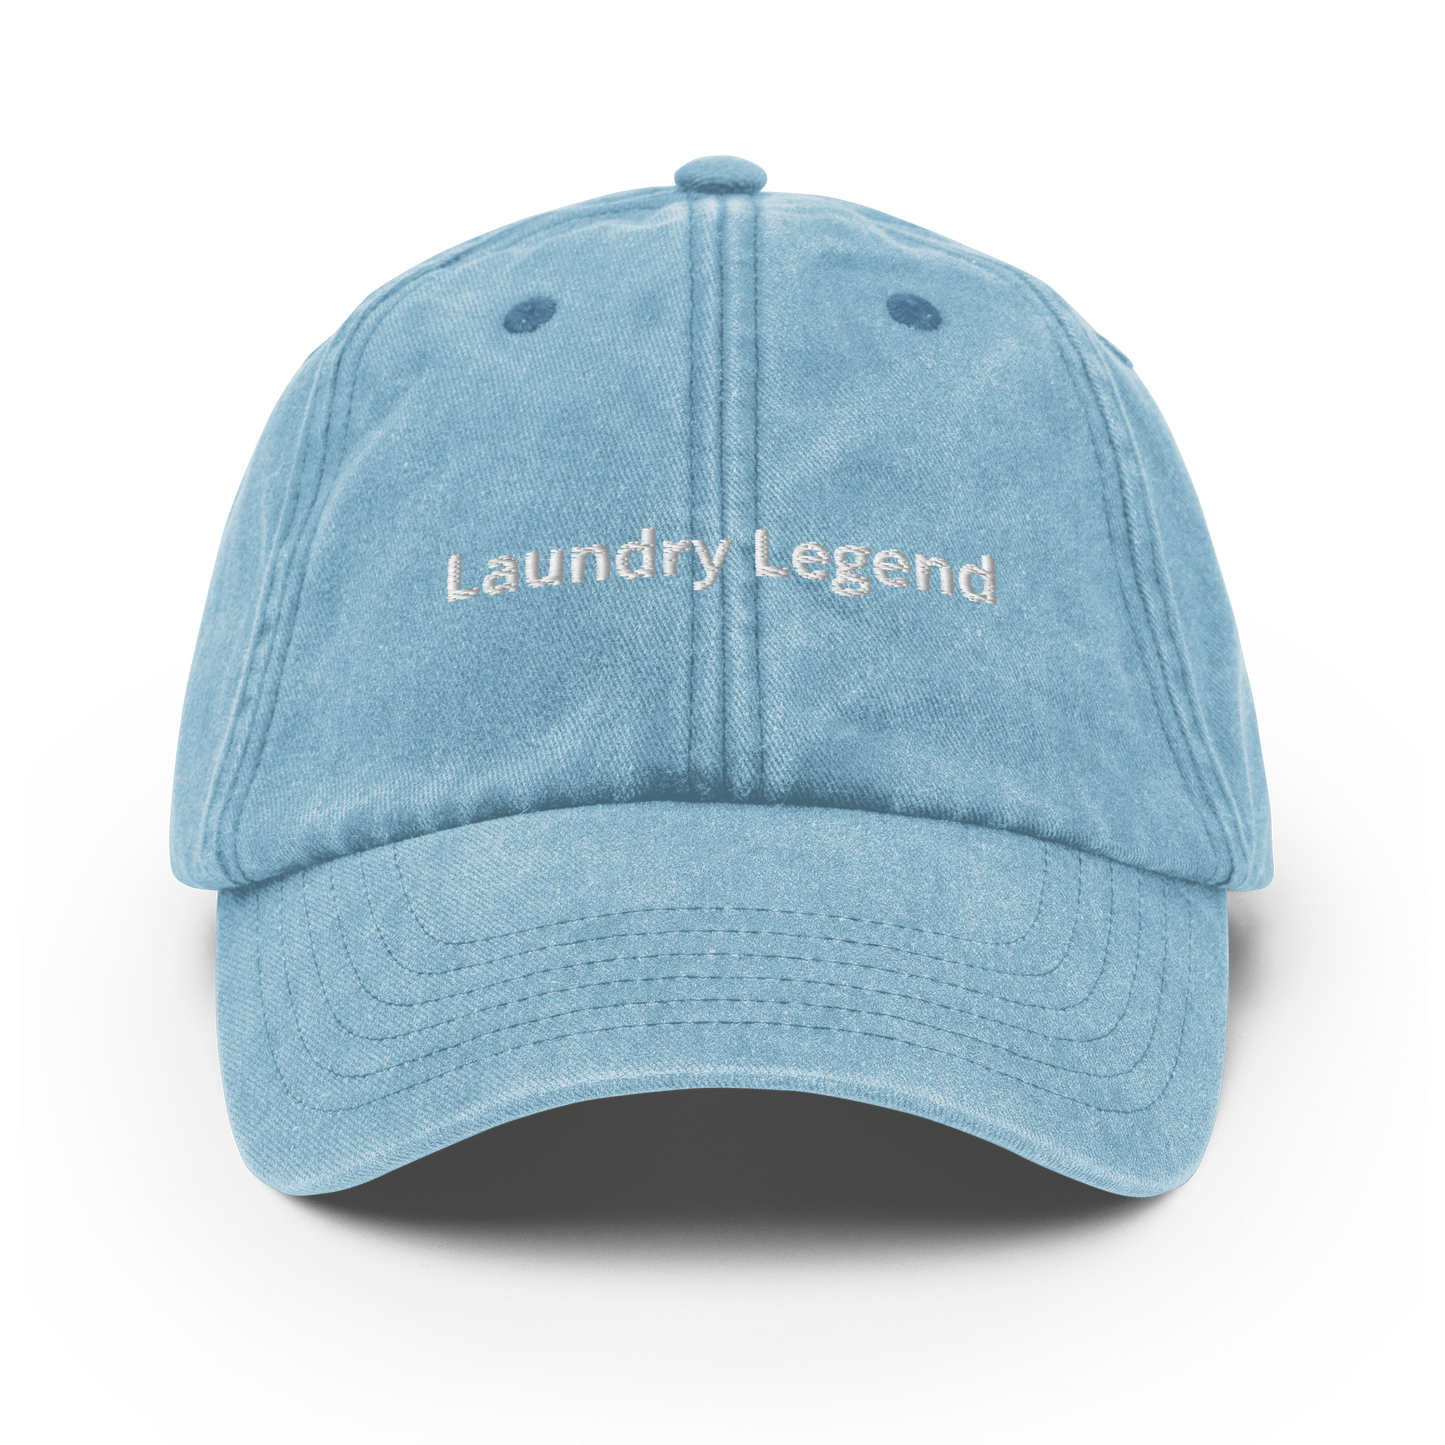 Laundry Legend - Vintage Hat